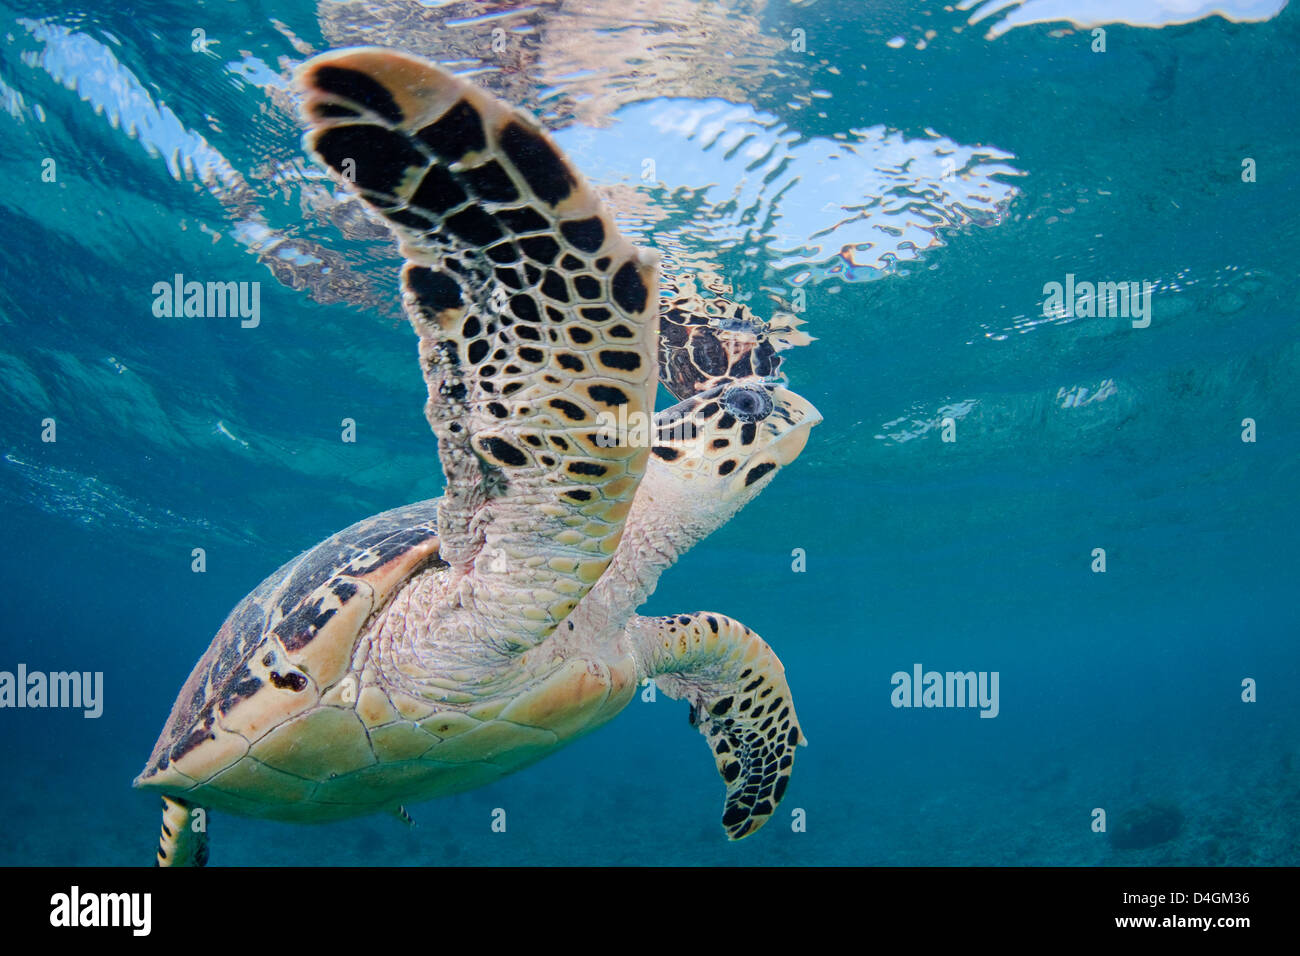 La tortuga carey, Eretmochelys imbricata, superficies para respirar fuera de la isla de Bonaire, en las Antillas Neerlandesas, el Caribe Foto de stock